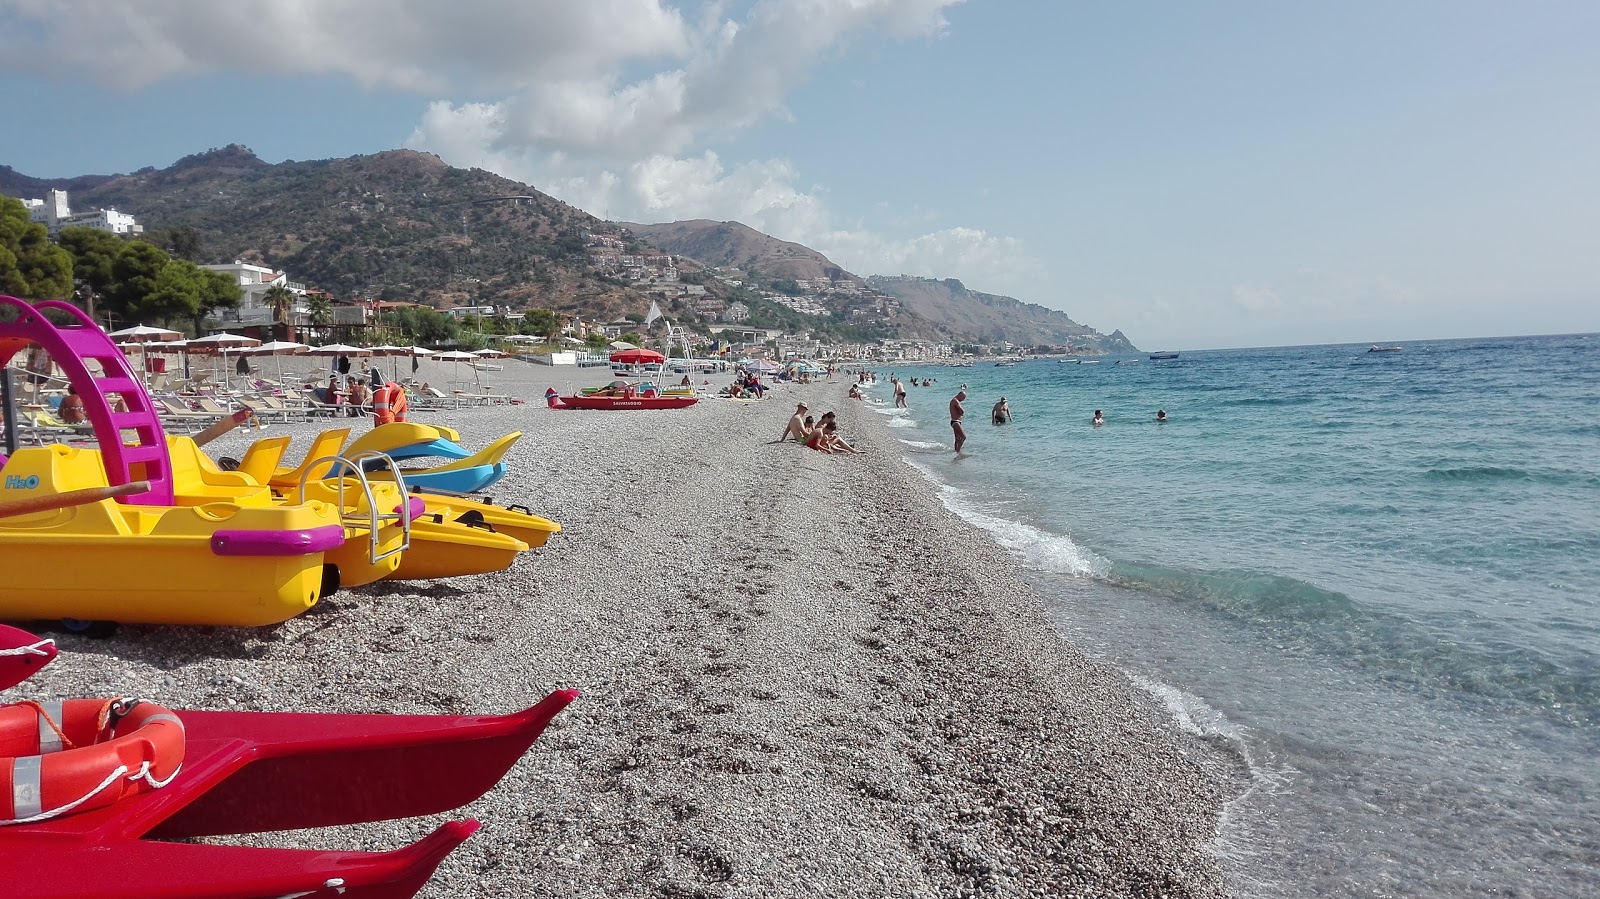 Foto af Spiaggia di Mazzeo - populært sted blandt afslapningskendere